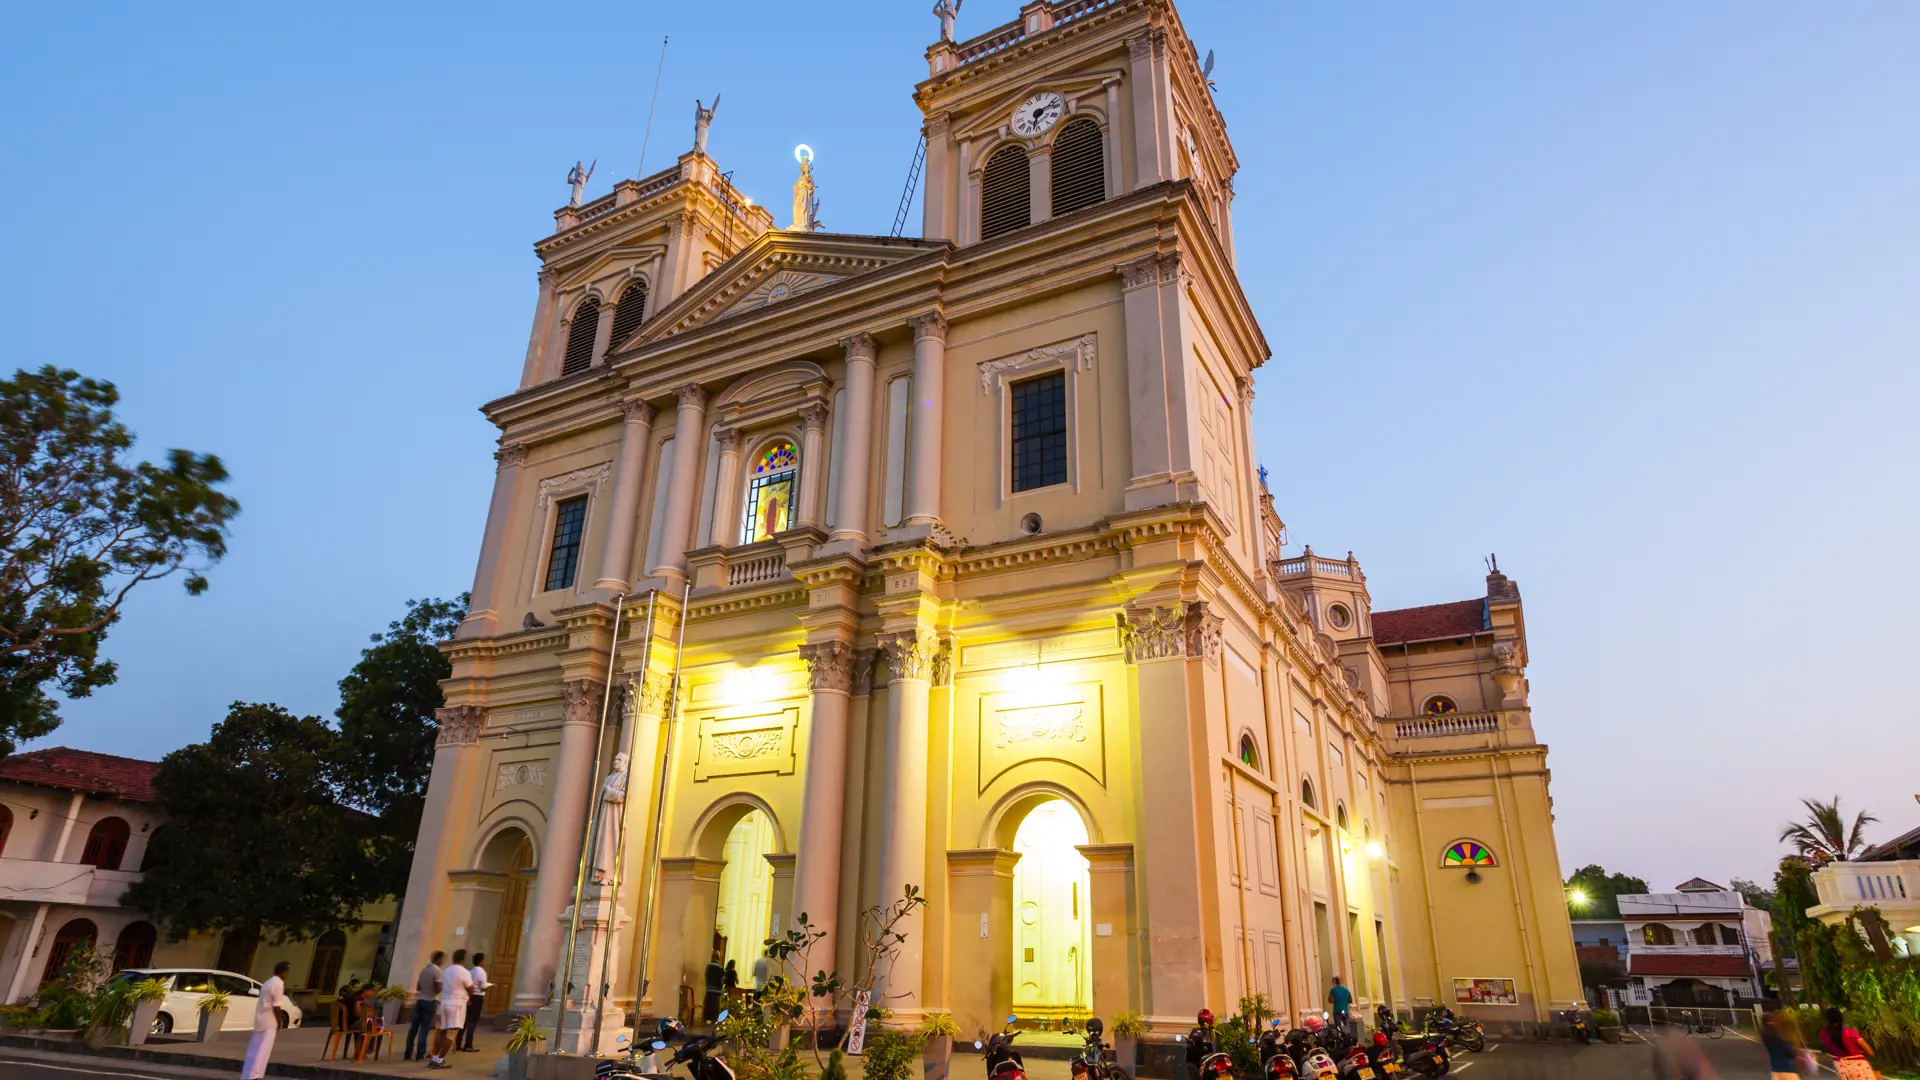 NEGOMBO - Under jeres besøg i Negombo kan I gå en tur i byen og for eksempel se den flotte St. Mary's Church.